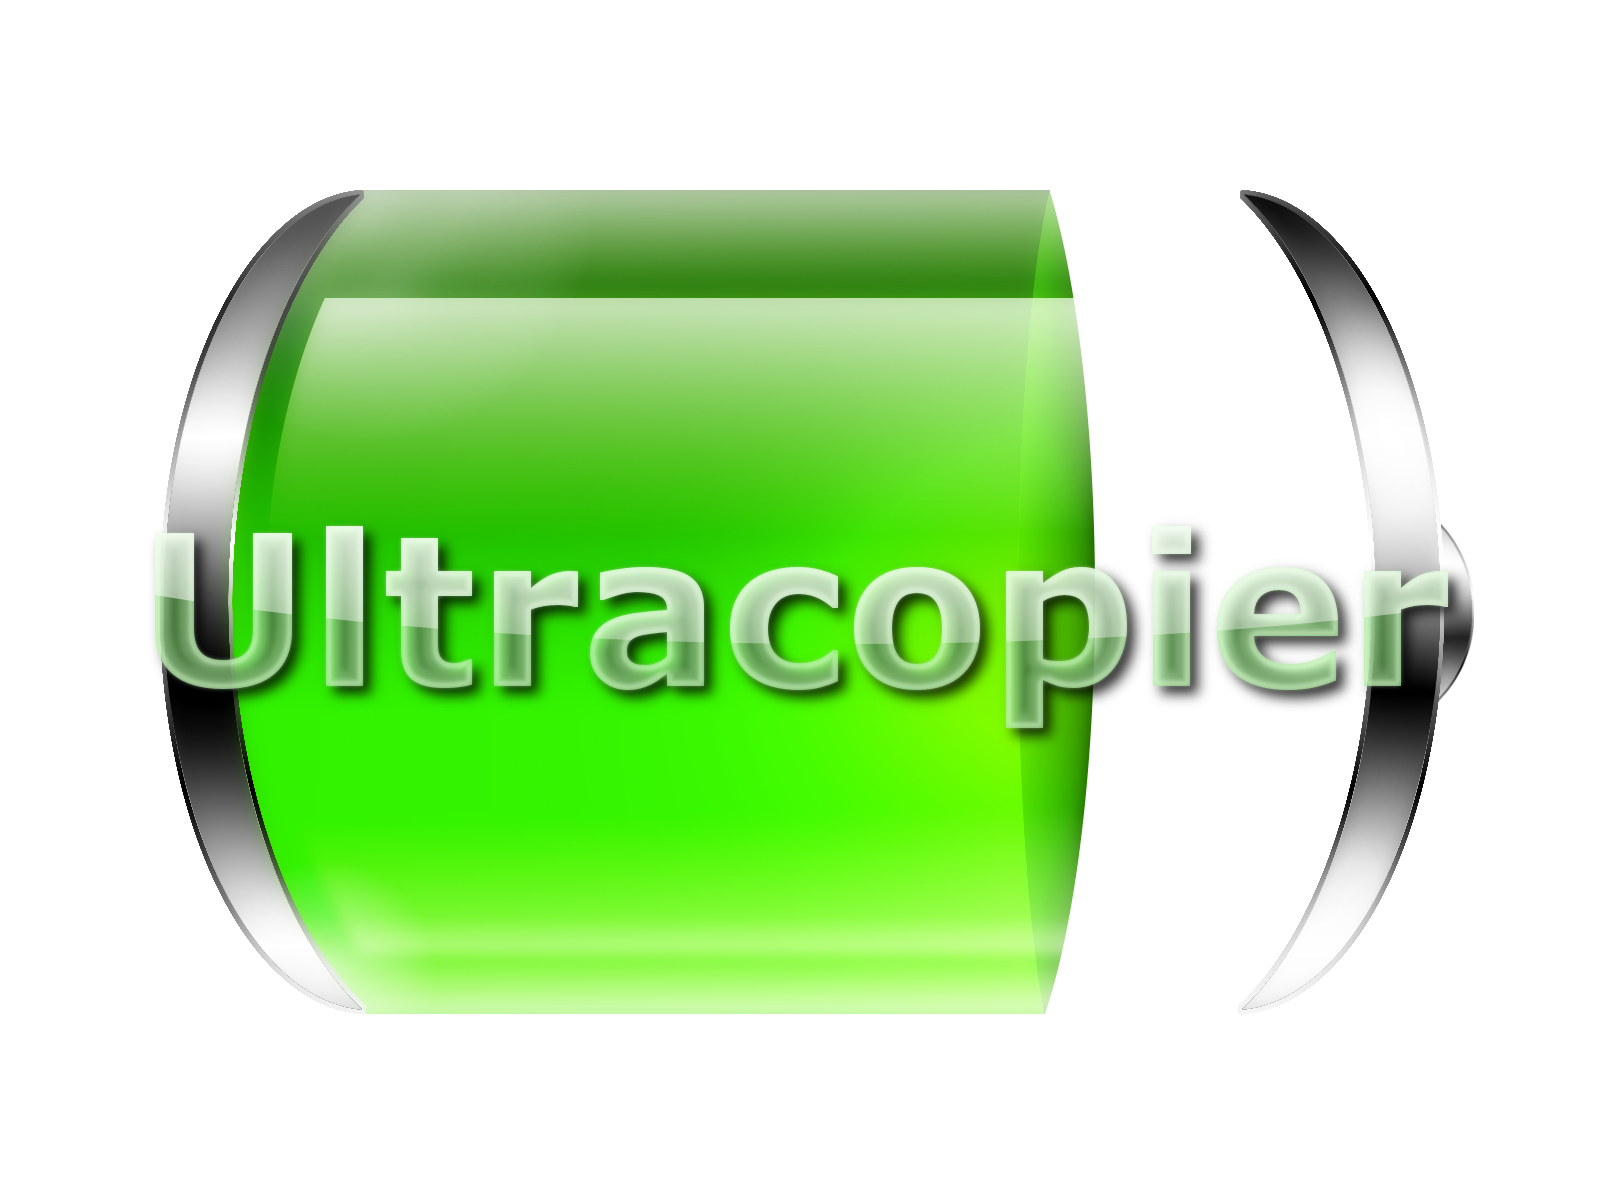 برنامج لتسريع نقل الملفات UltraCopier 1.6.1.4 في اخر اصدار للنواتين